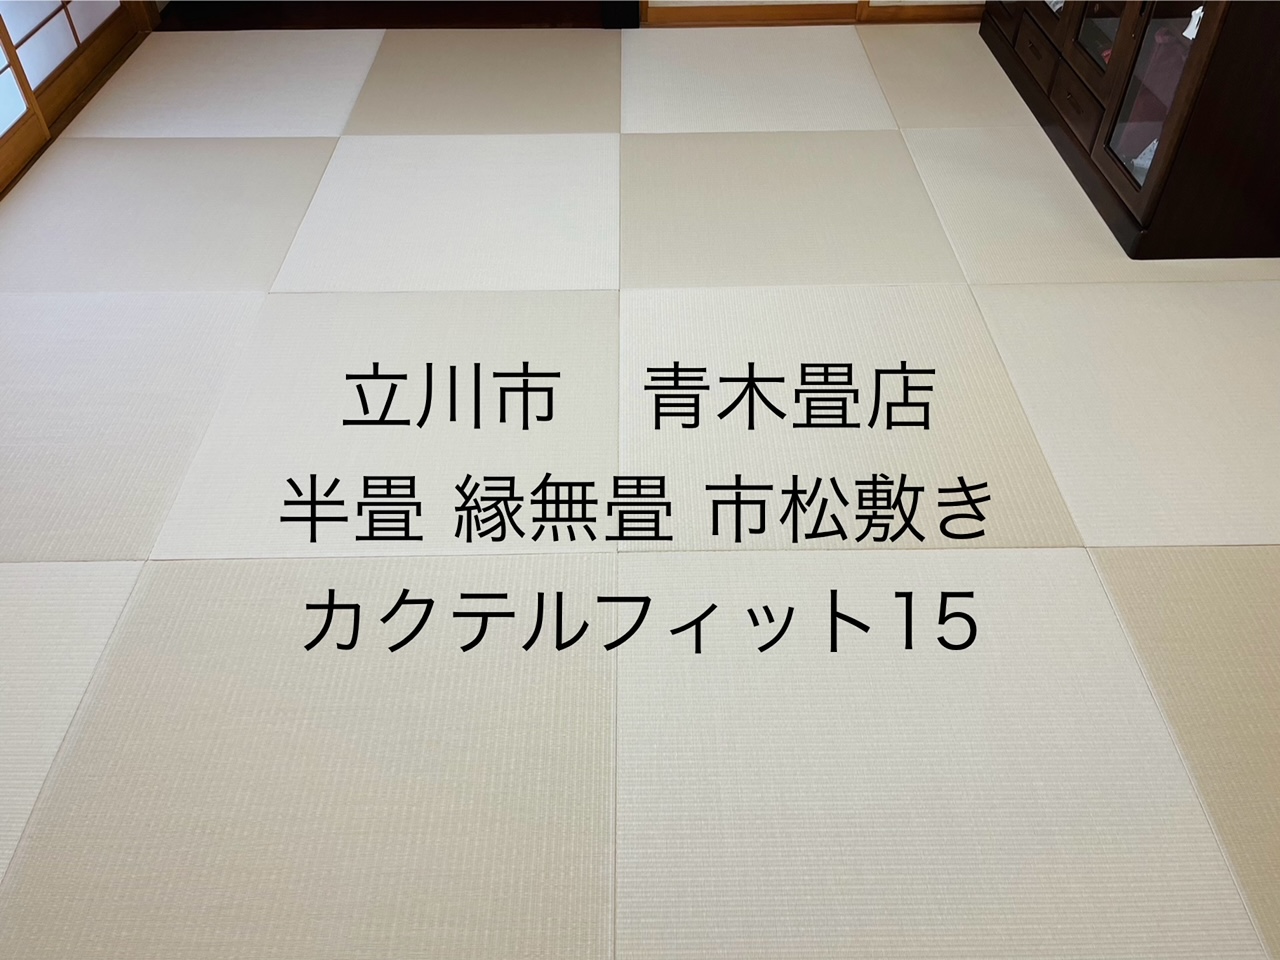 ダイケン和紙表カクテルフィットで半畳縁なし畳市松敷きで施工させていただきました。東京都国分寺市